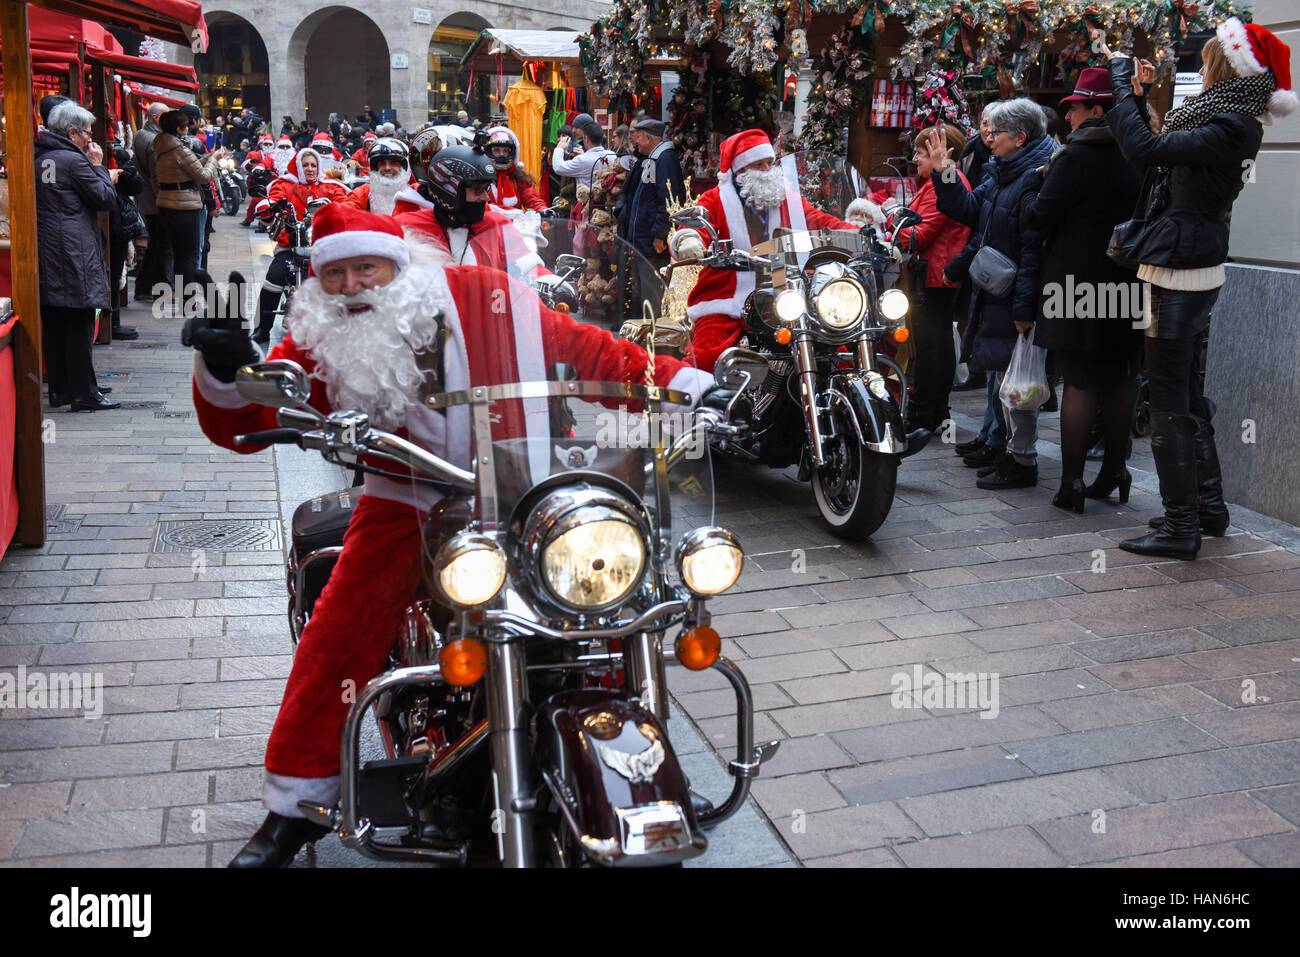 Lugano, Schweiz. 3. Dezember 2016. Christmas Parade der Weihnachtsmänner,  die ein Motorrad auf den Straßen von Lugano auf dem italienischen Teil der  Schweiz Credit fahren: Stefan Ember/Alamy Live News Stockfotografie - Alamy